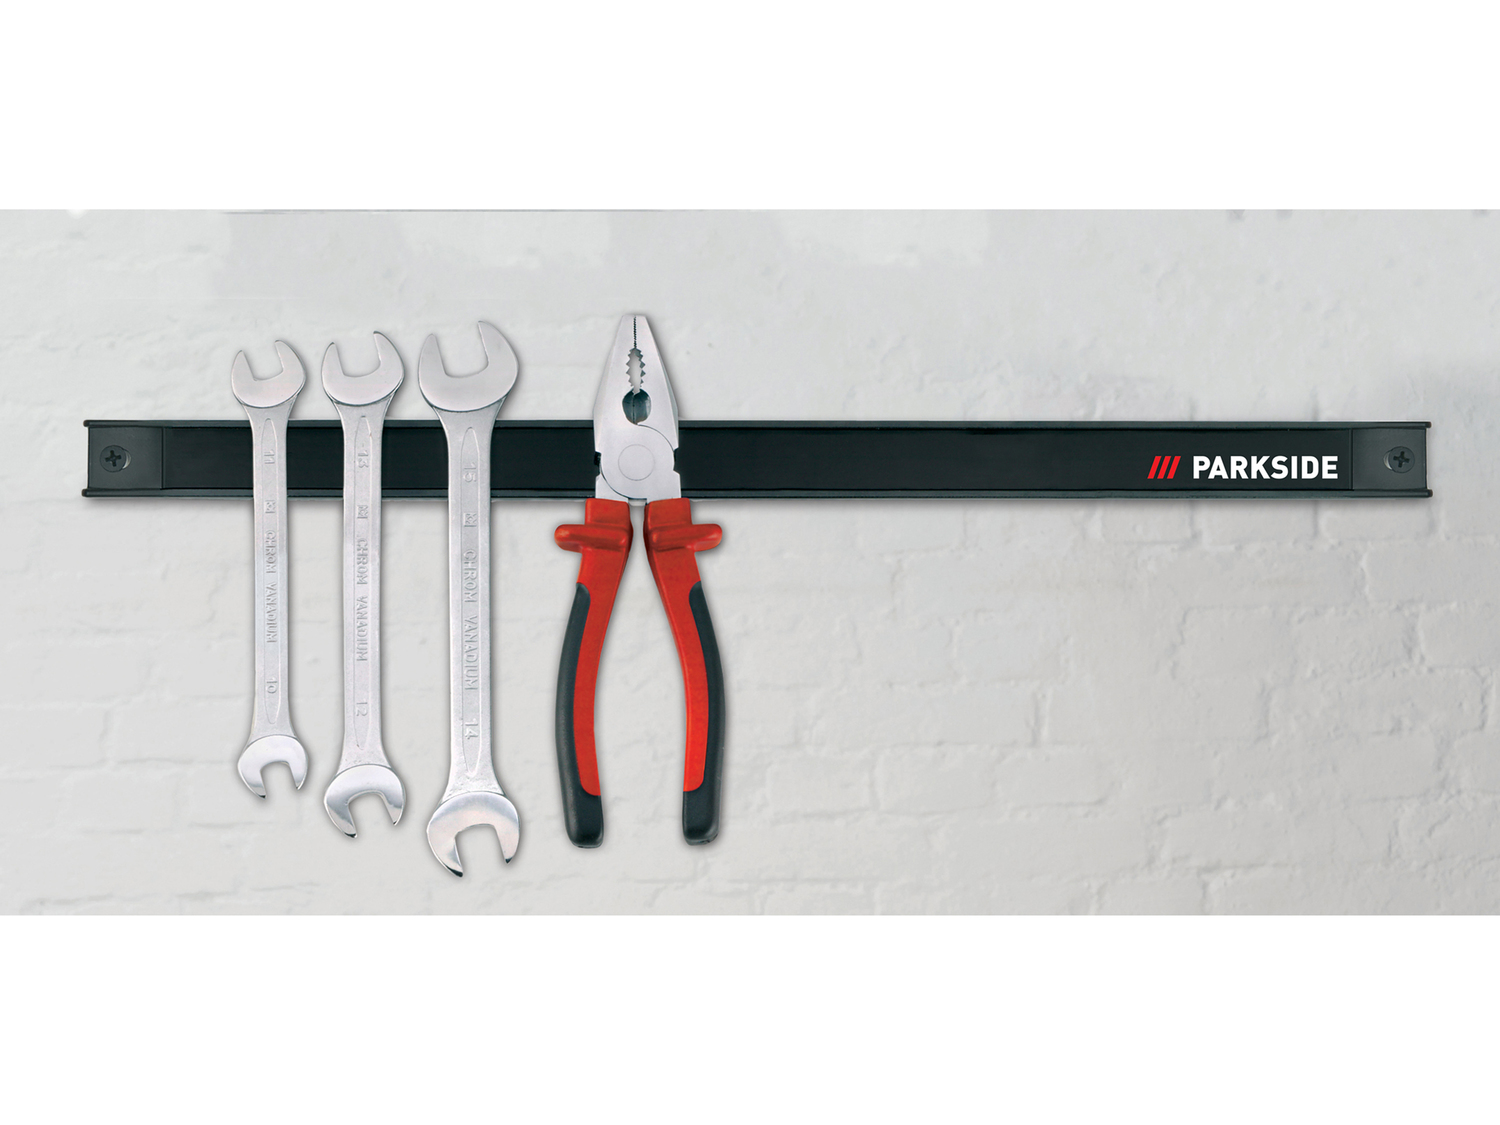 Accessori magnetici o utensili da lavoro Parkside, prezzo 3.99 €  

Caratteristiche